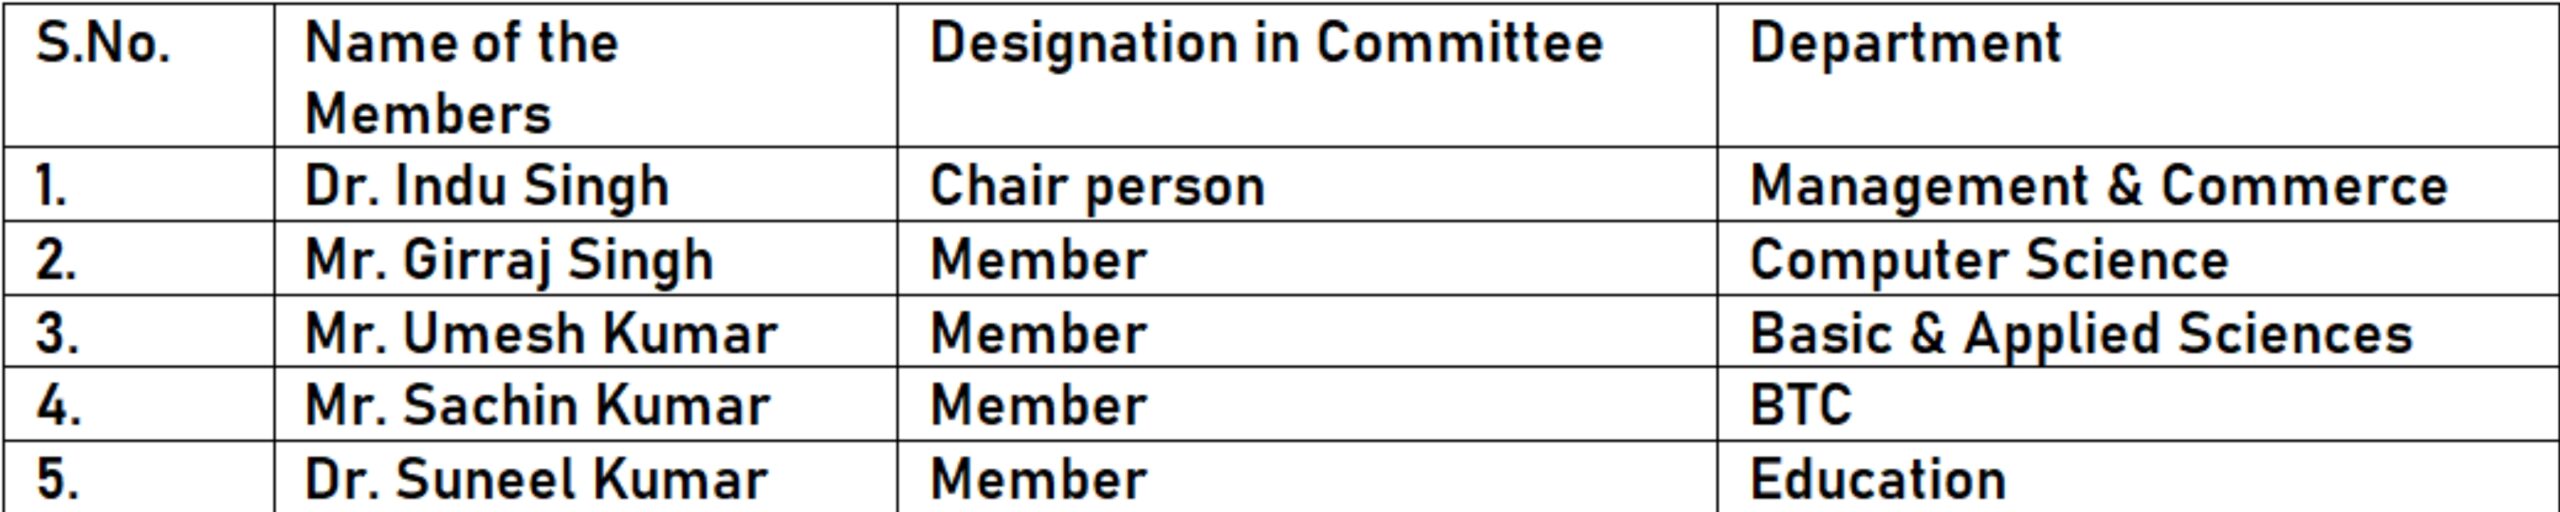 IIMT - Members of the Committee